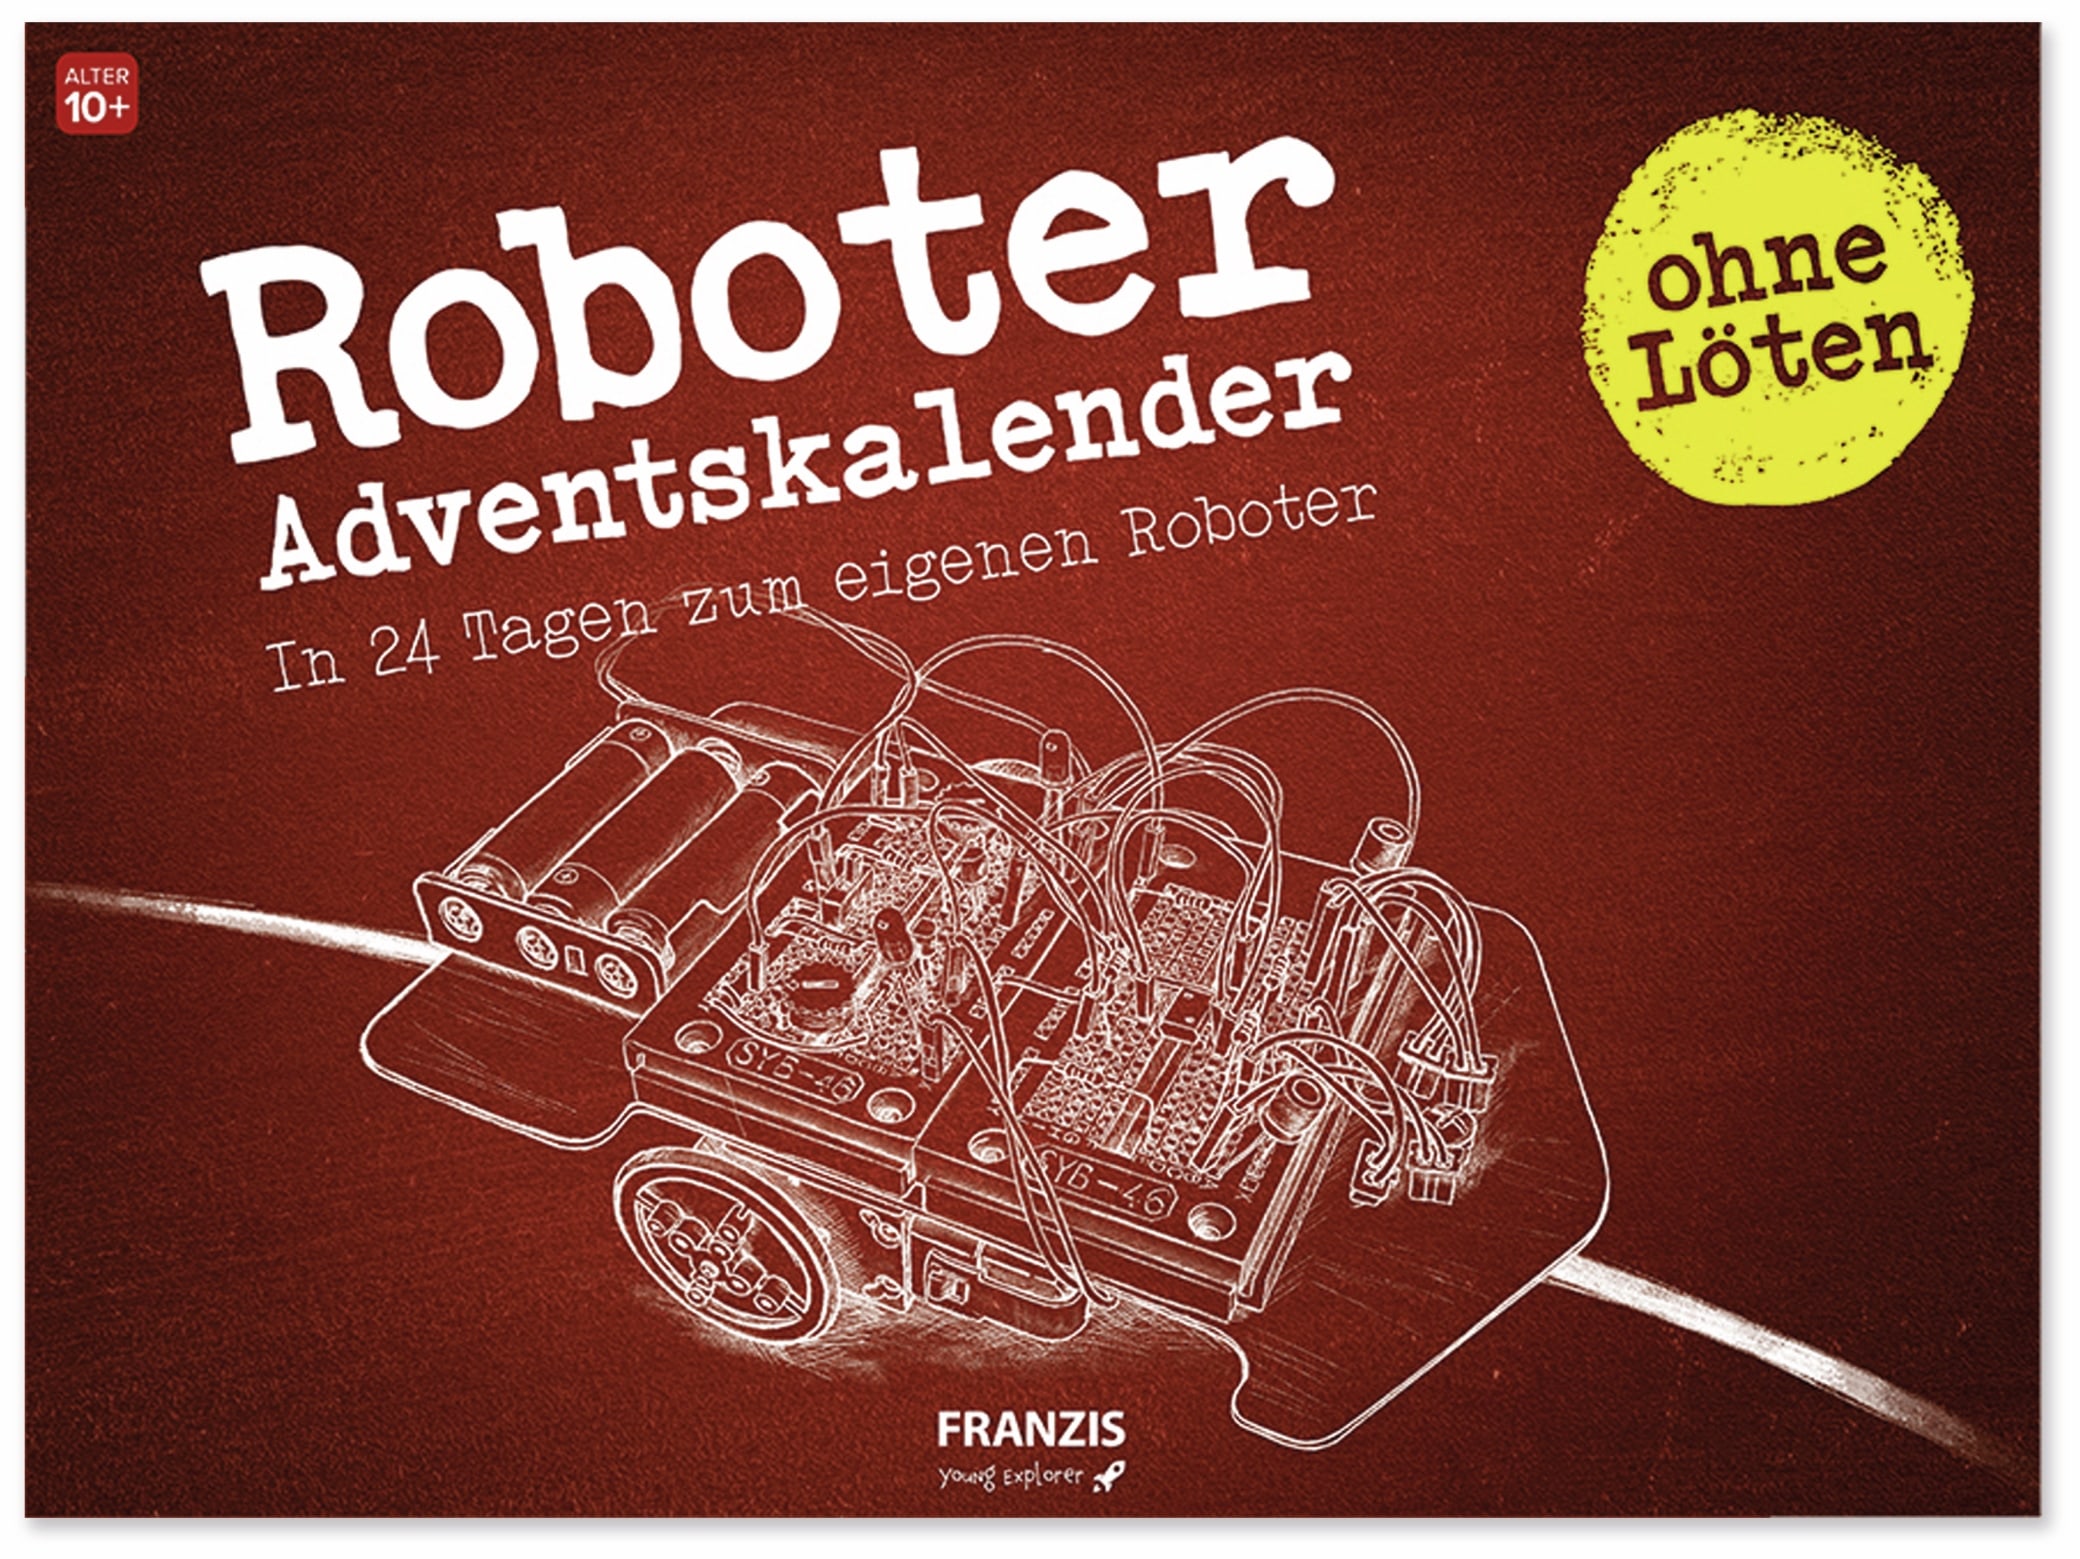 FRANZIS, Young Explorer Roboter-Adventskalender